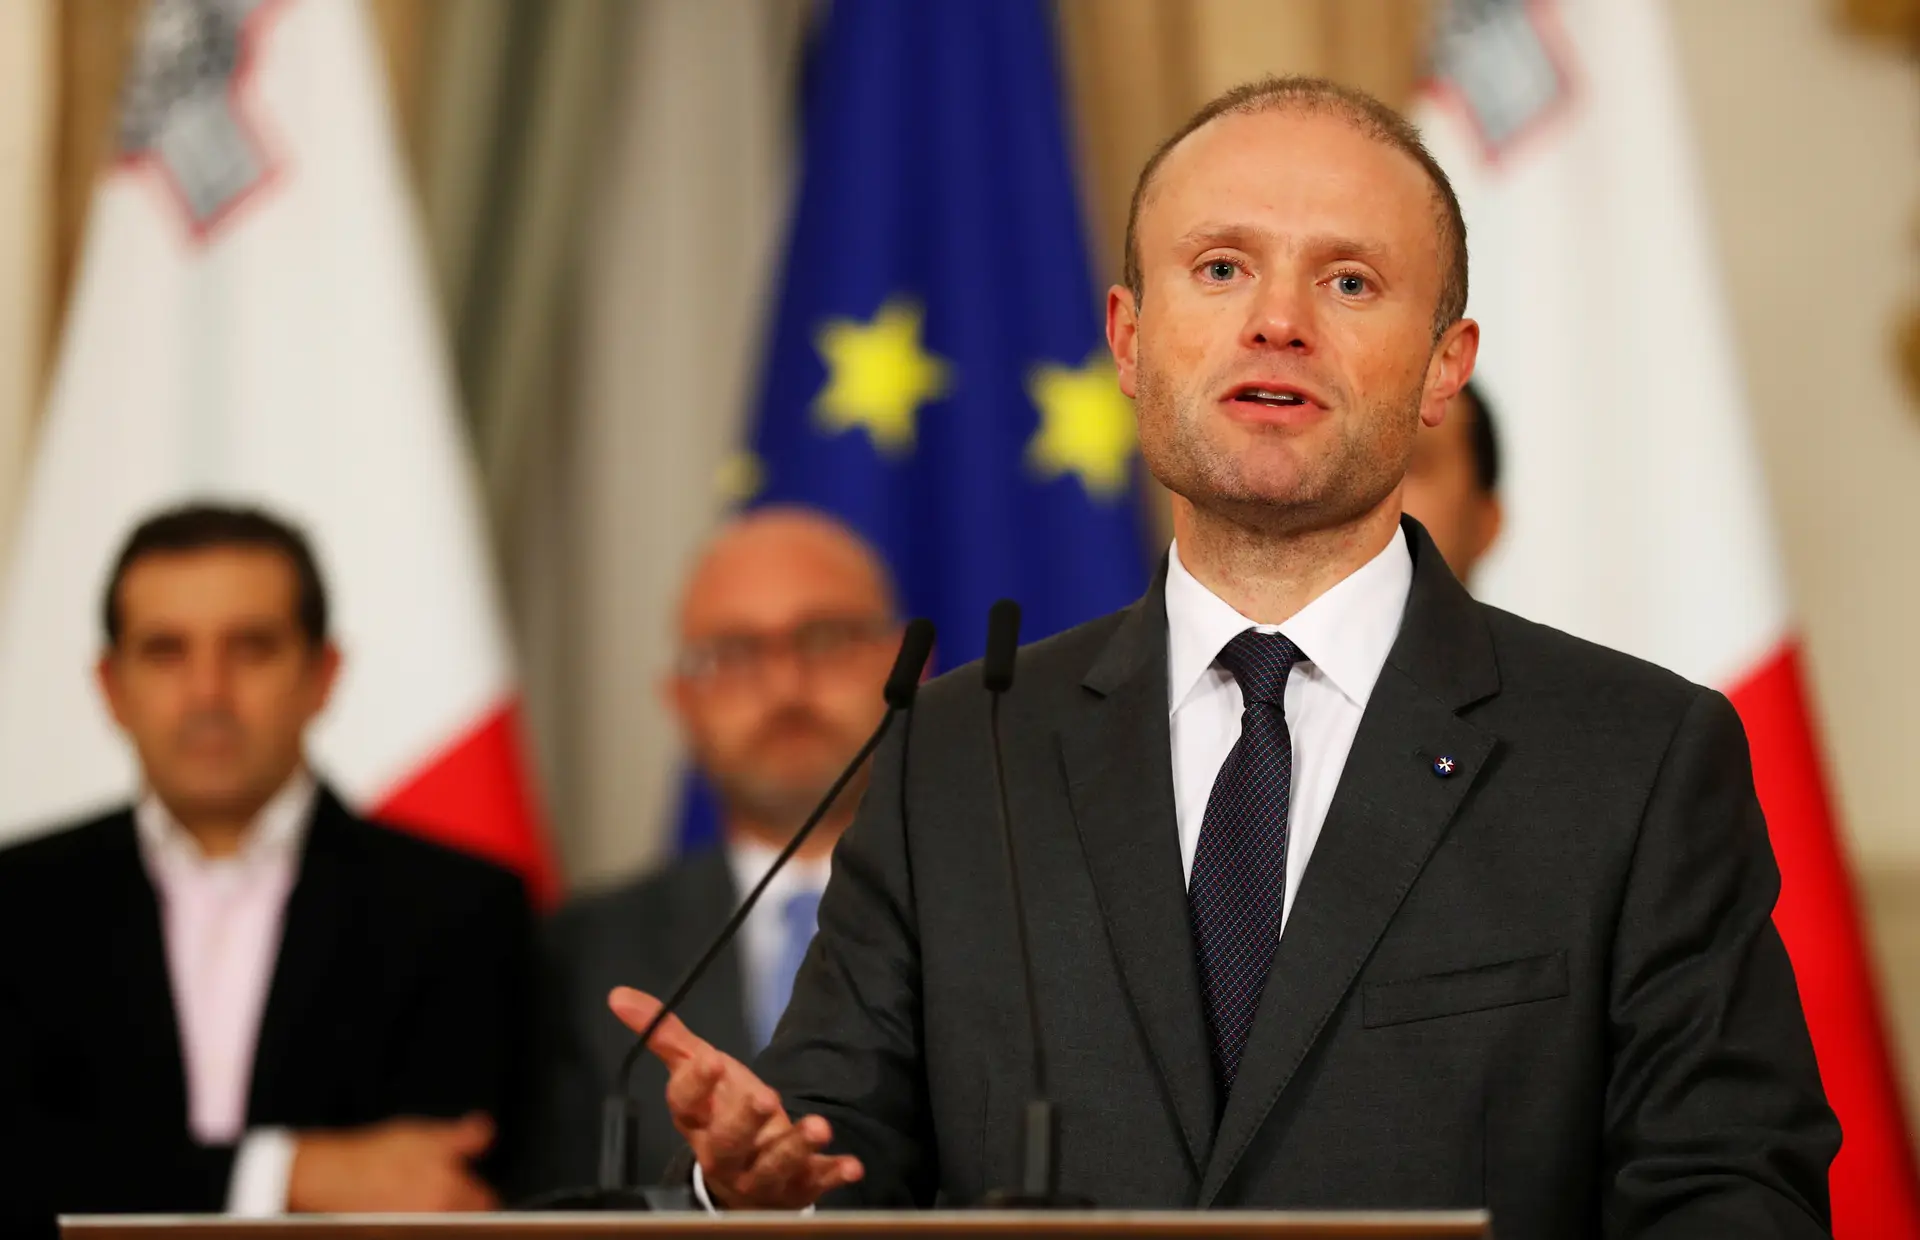 PM de Malta vai demitir-se por alegadas ligações a morte de jornalista